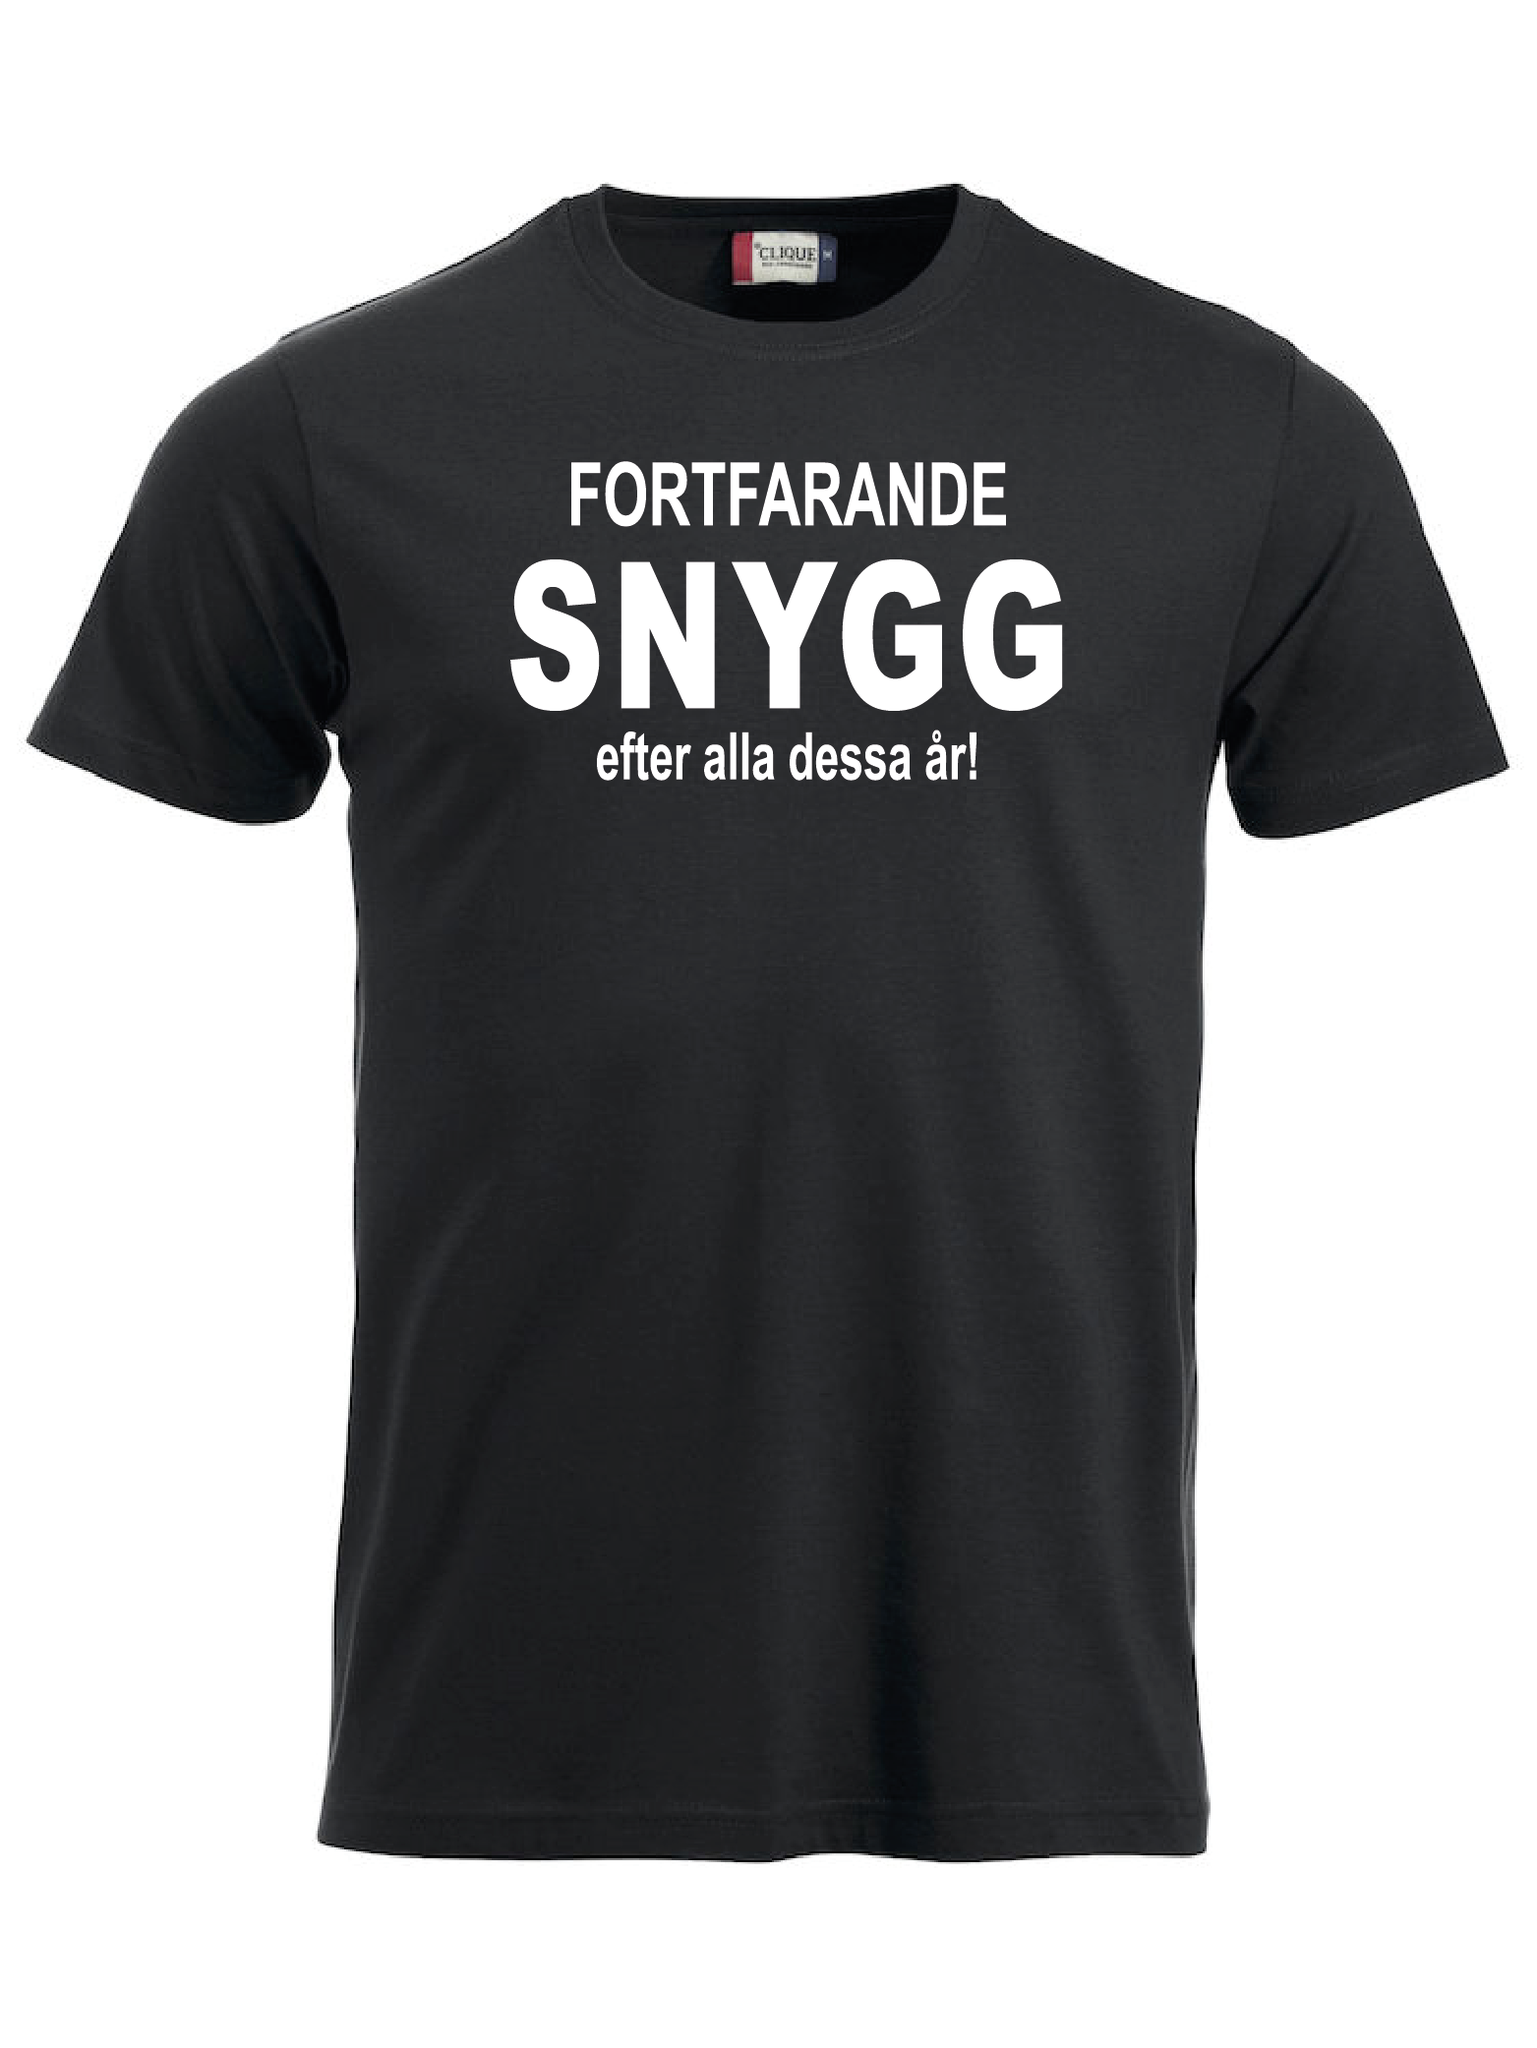 T-shirt "FORTFARANDE SNYGG"